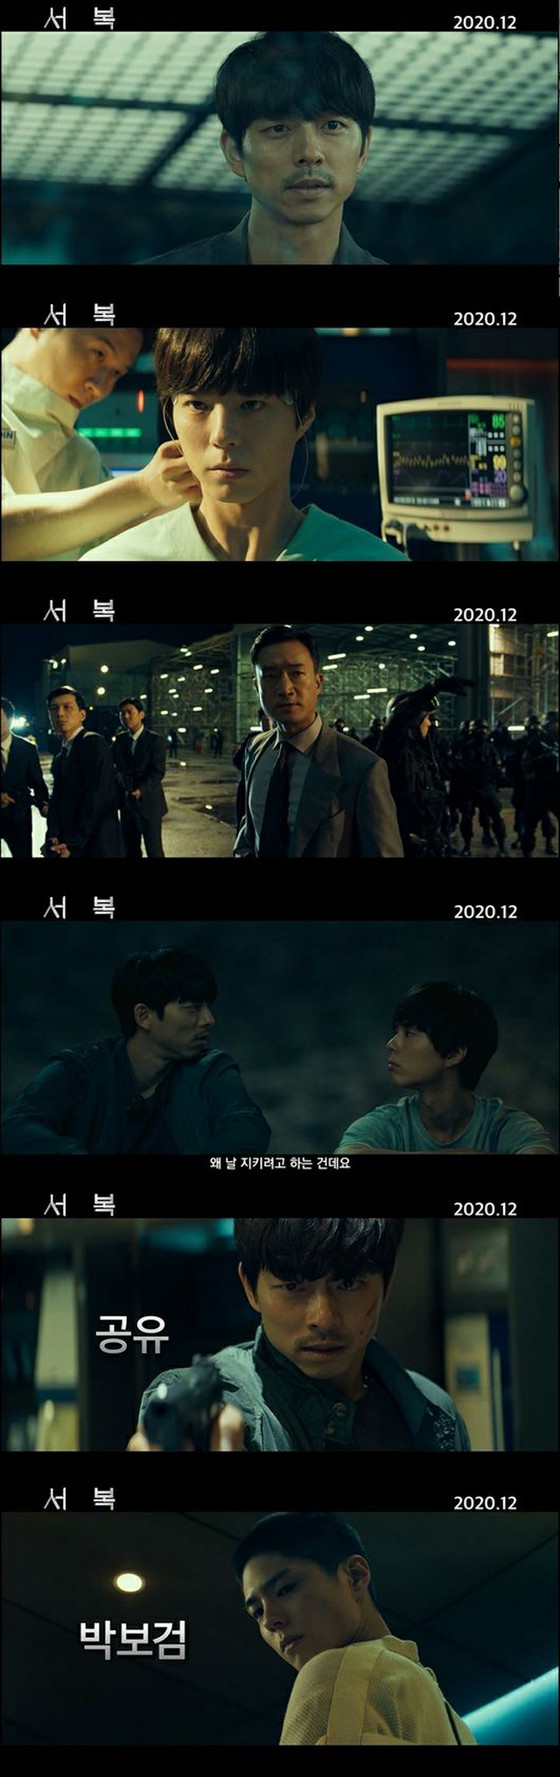 [อย่างเป็นทางการ] Gong Yoo & Park Bo Gum นำแสดงโดยภาพยนตร์ "Xu Fuku" เปิดตัวทีเซอร์ฉบับแรกสู่สาธารณะเป็นครั้งแรก ...